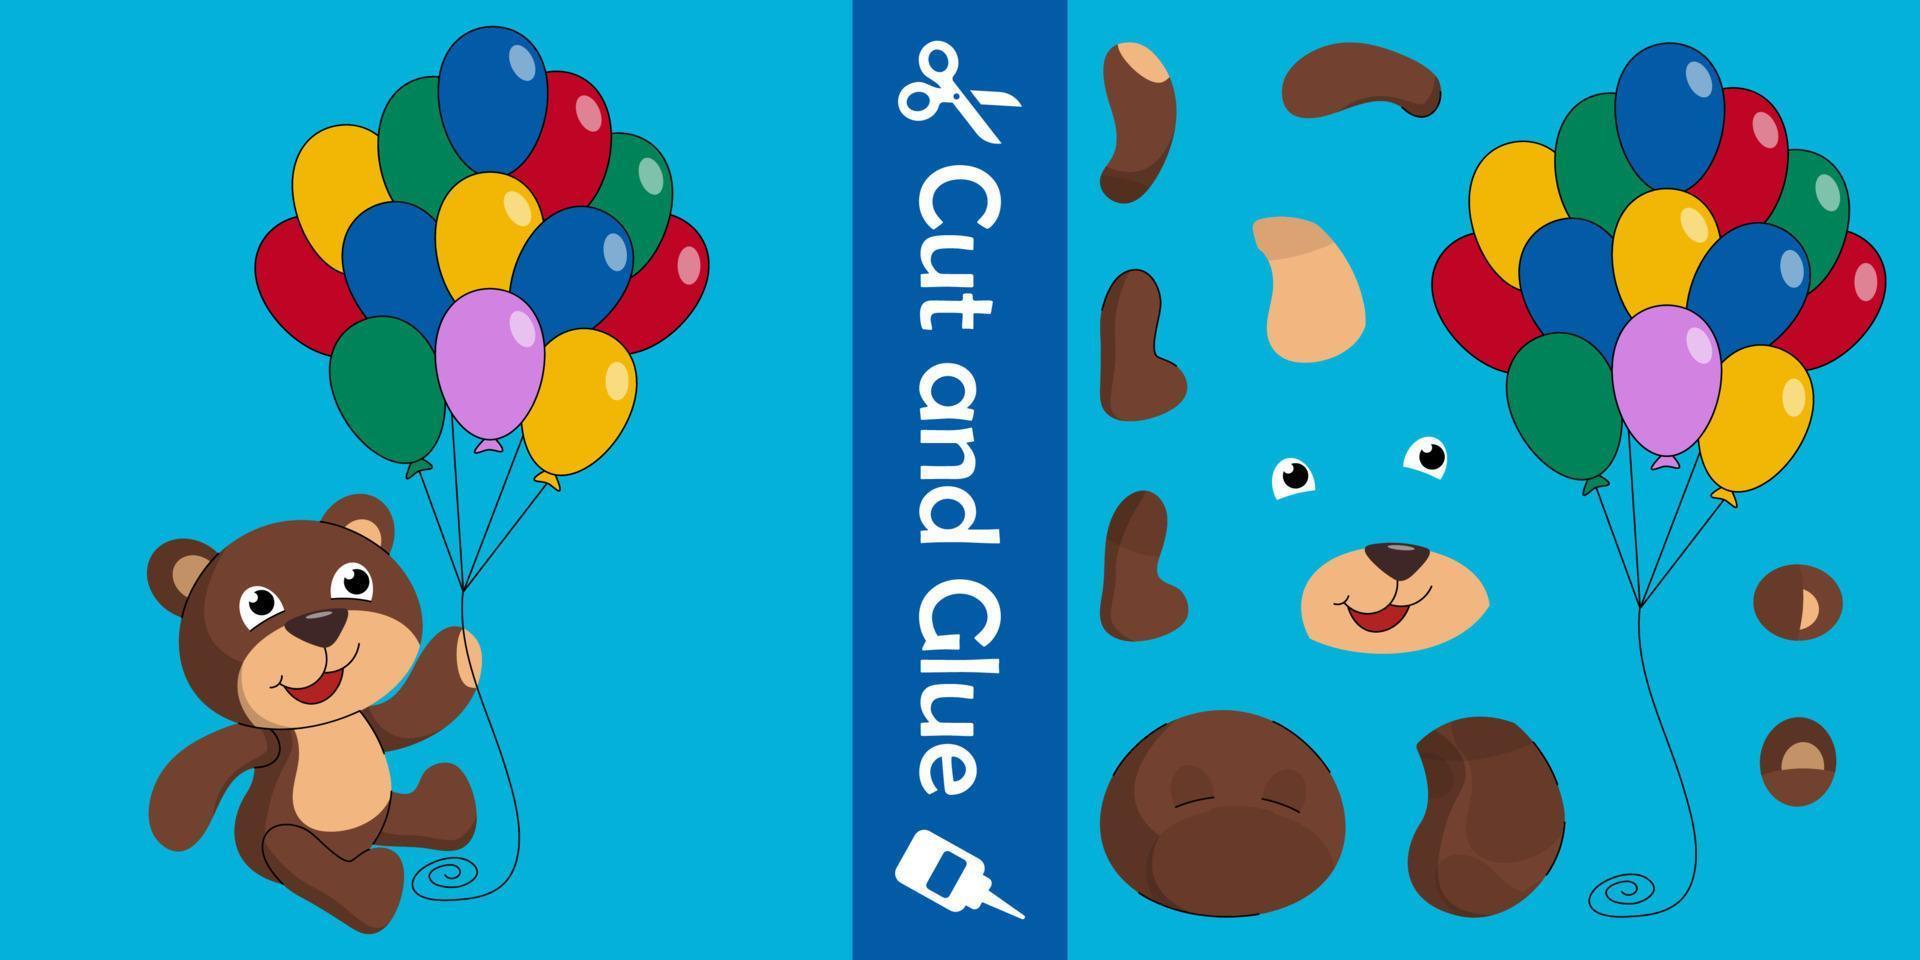 schattige beer met kleurrijke ballonnen. onderwijs papier spel voor kinderen. knip en lijm. vector illustratie